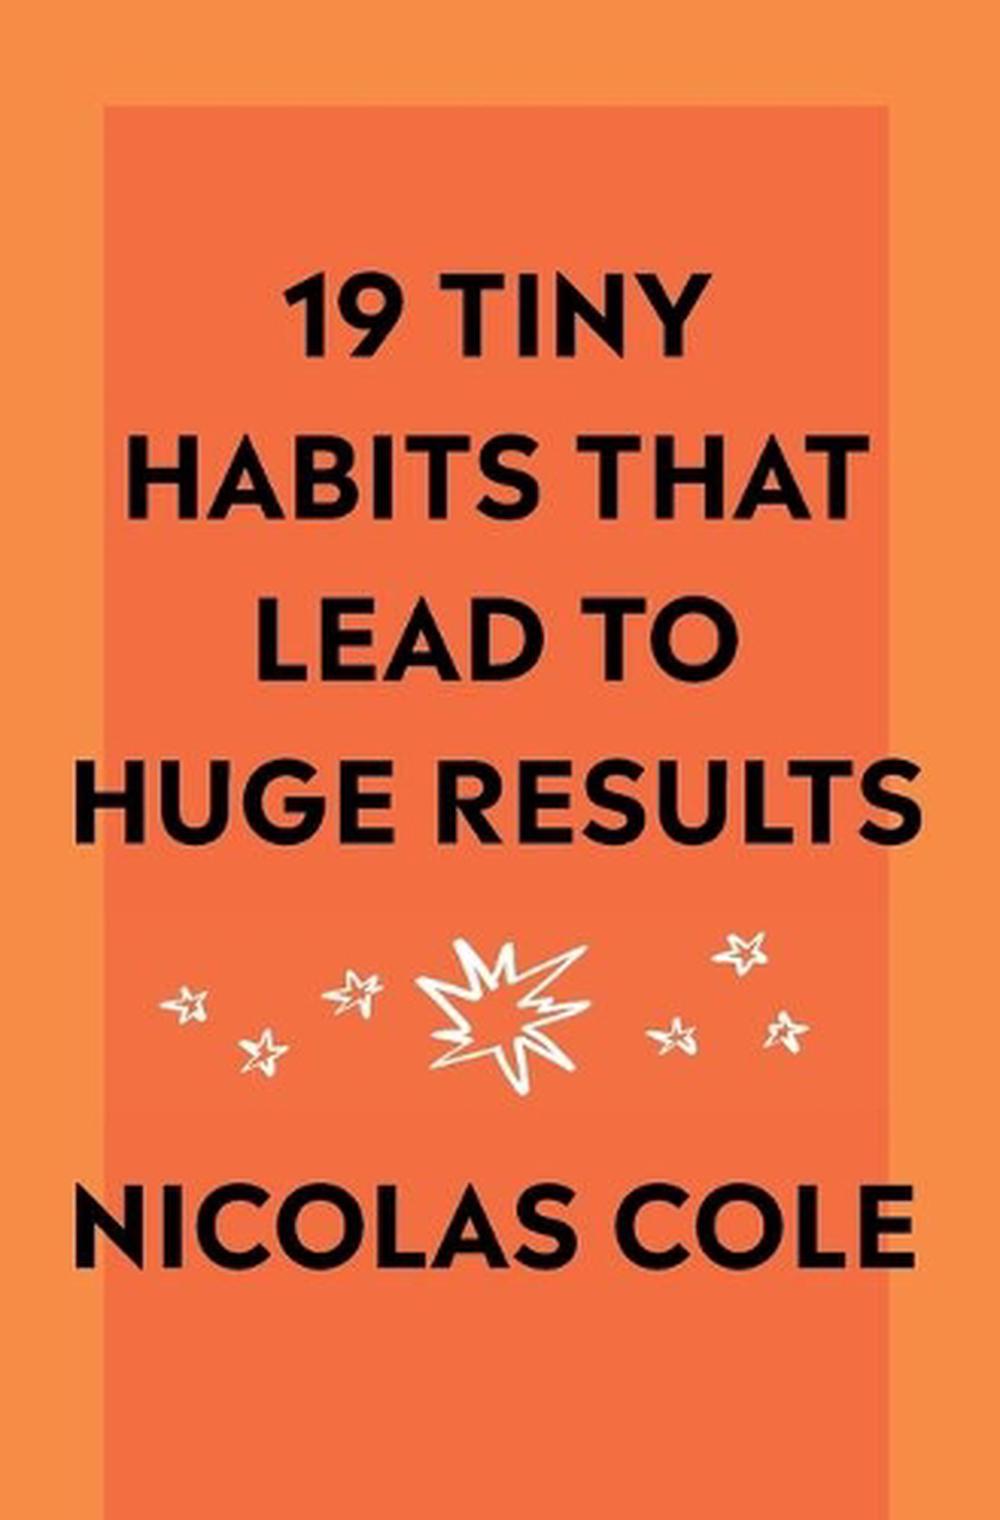 21 tiny habits